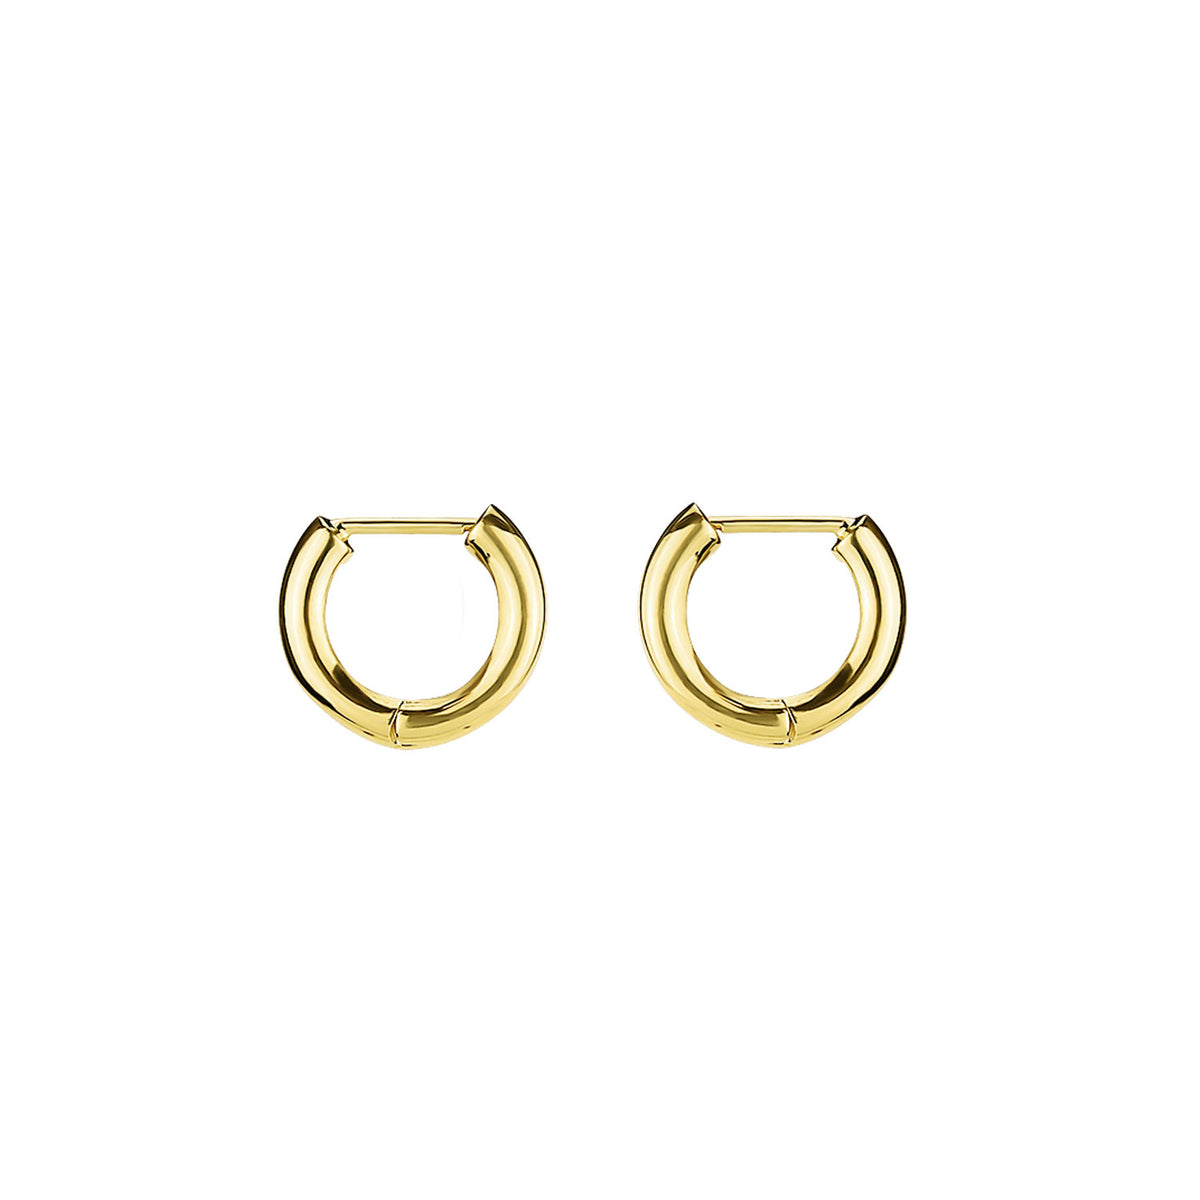 Faceted Oval Gemstone on Hinged Huggie Earrings